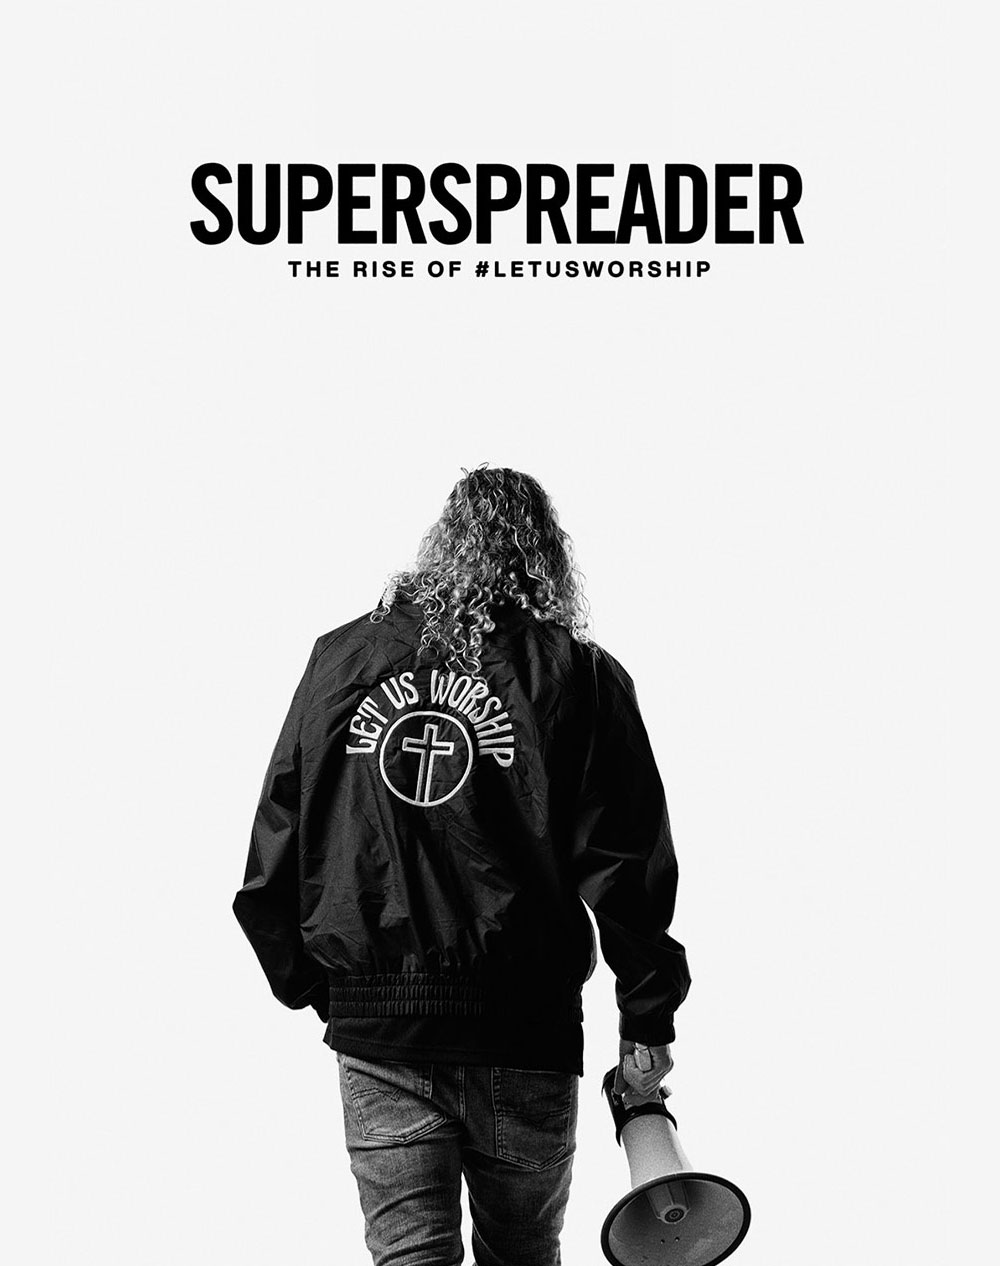 Buy Superspreader